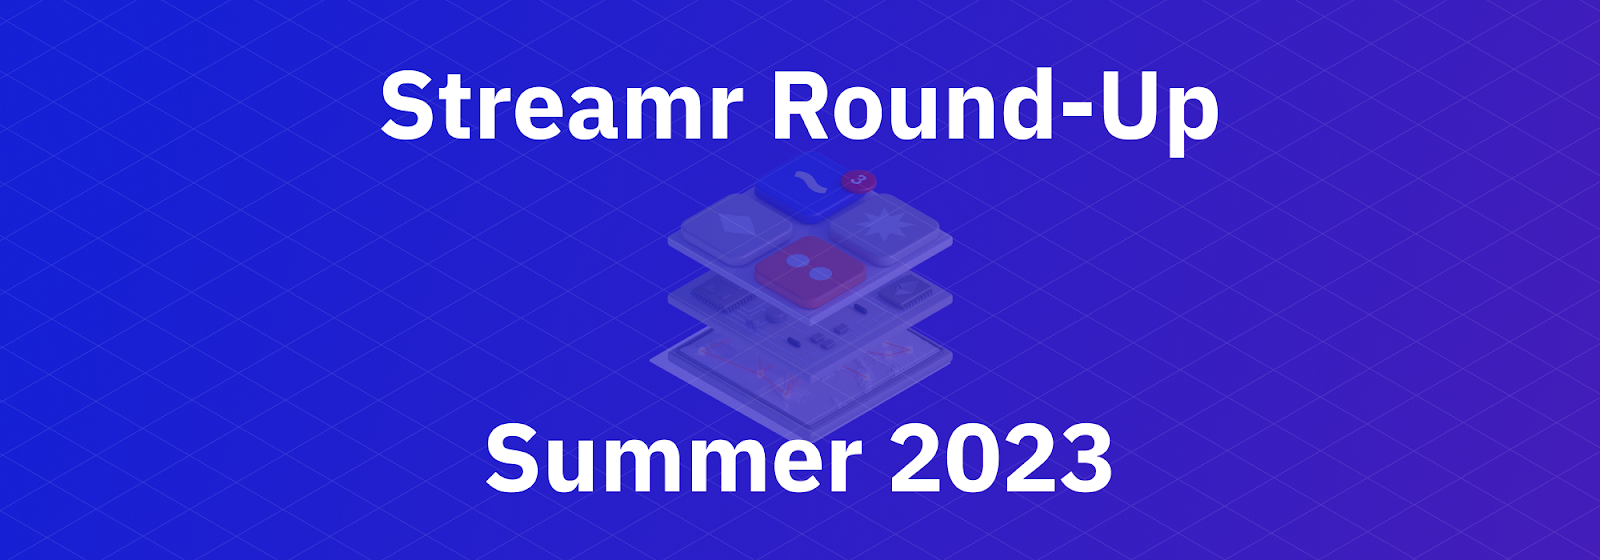 Streamr Round-Up Summer 2023